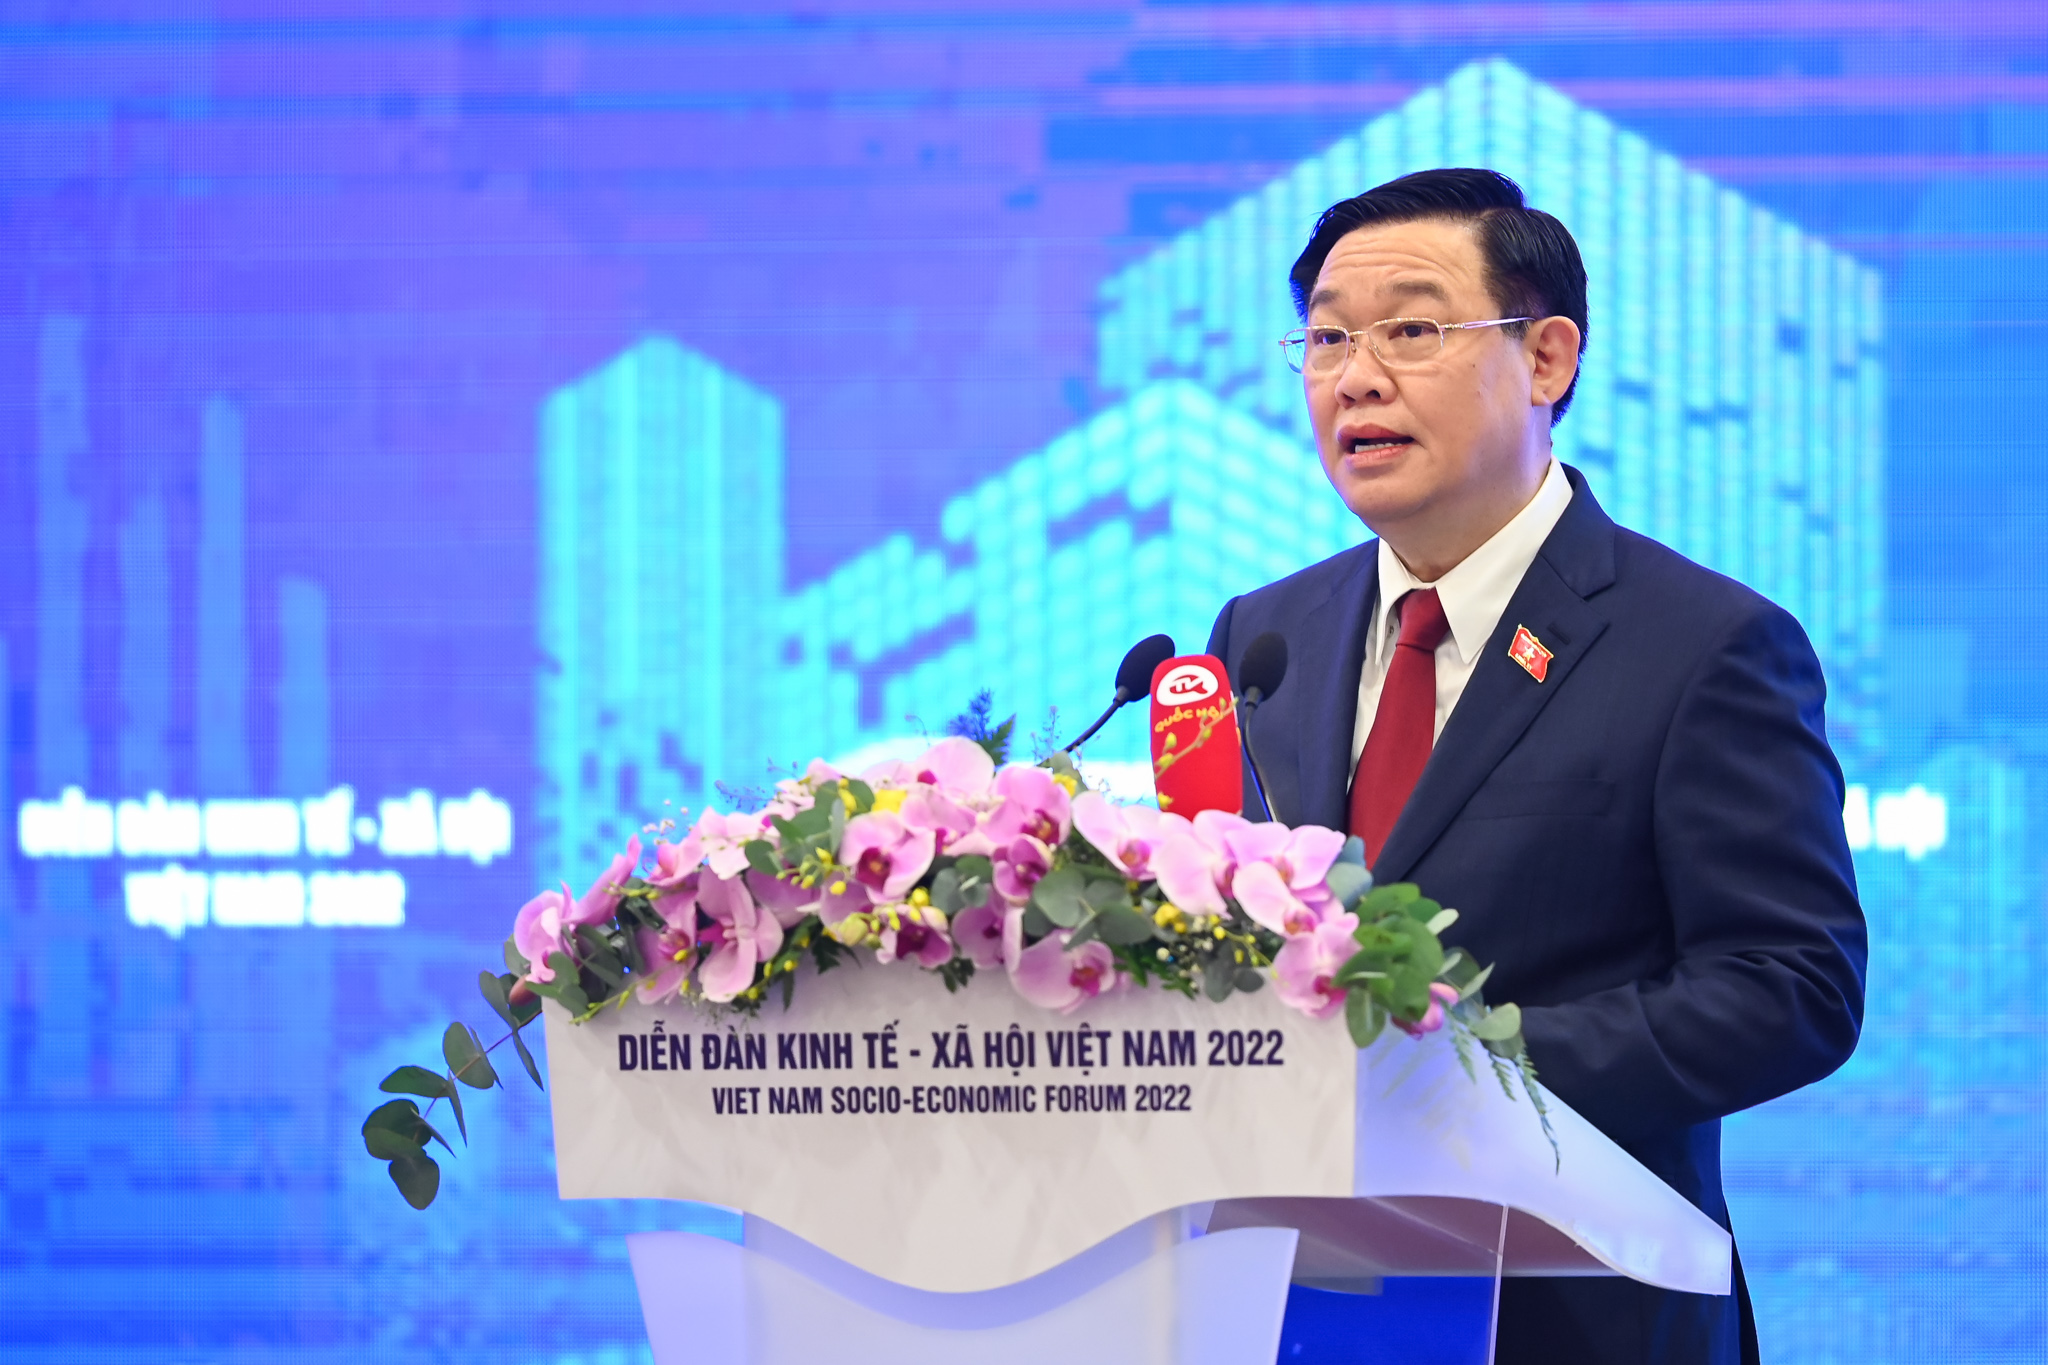 Full Video: Phiên toàn thể Diễn đàn Kinh tế - Xã hội Việt Nam VSEF 2022